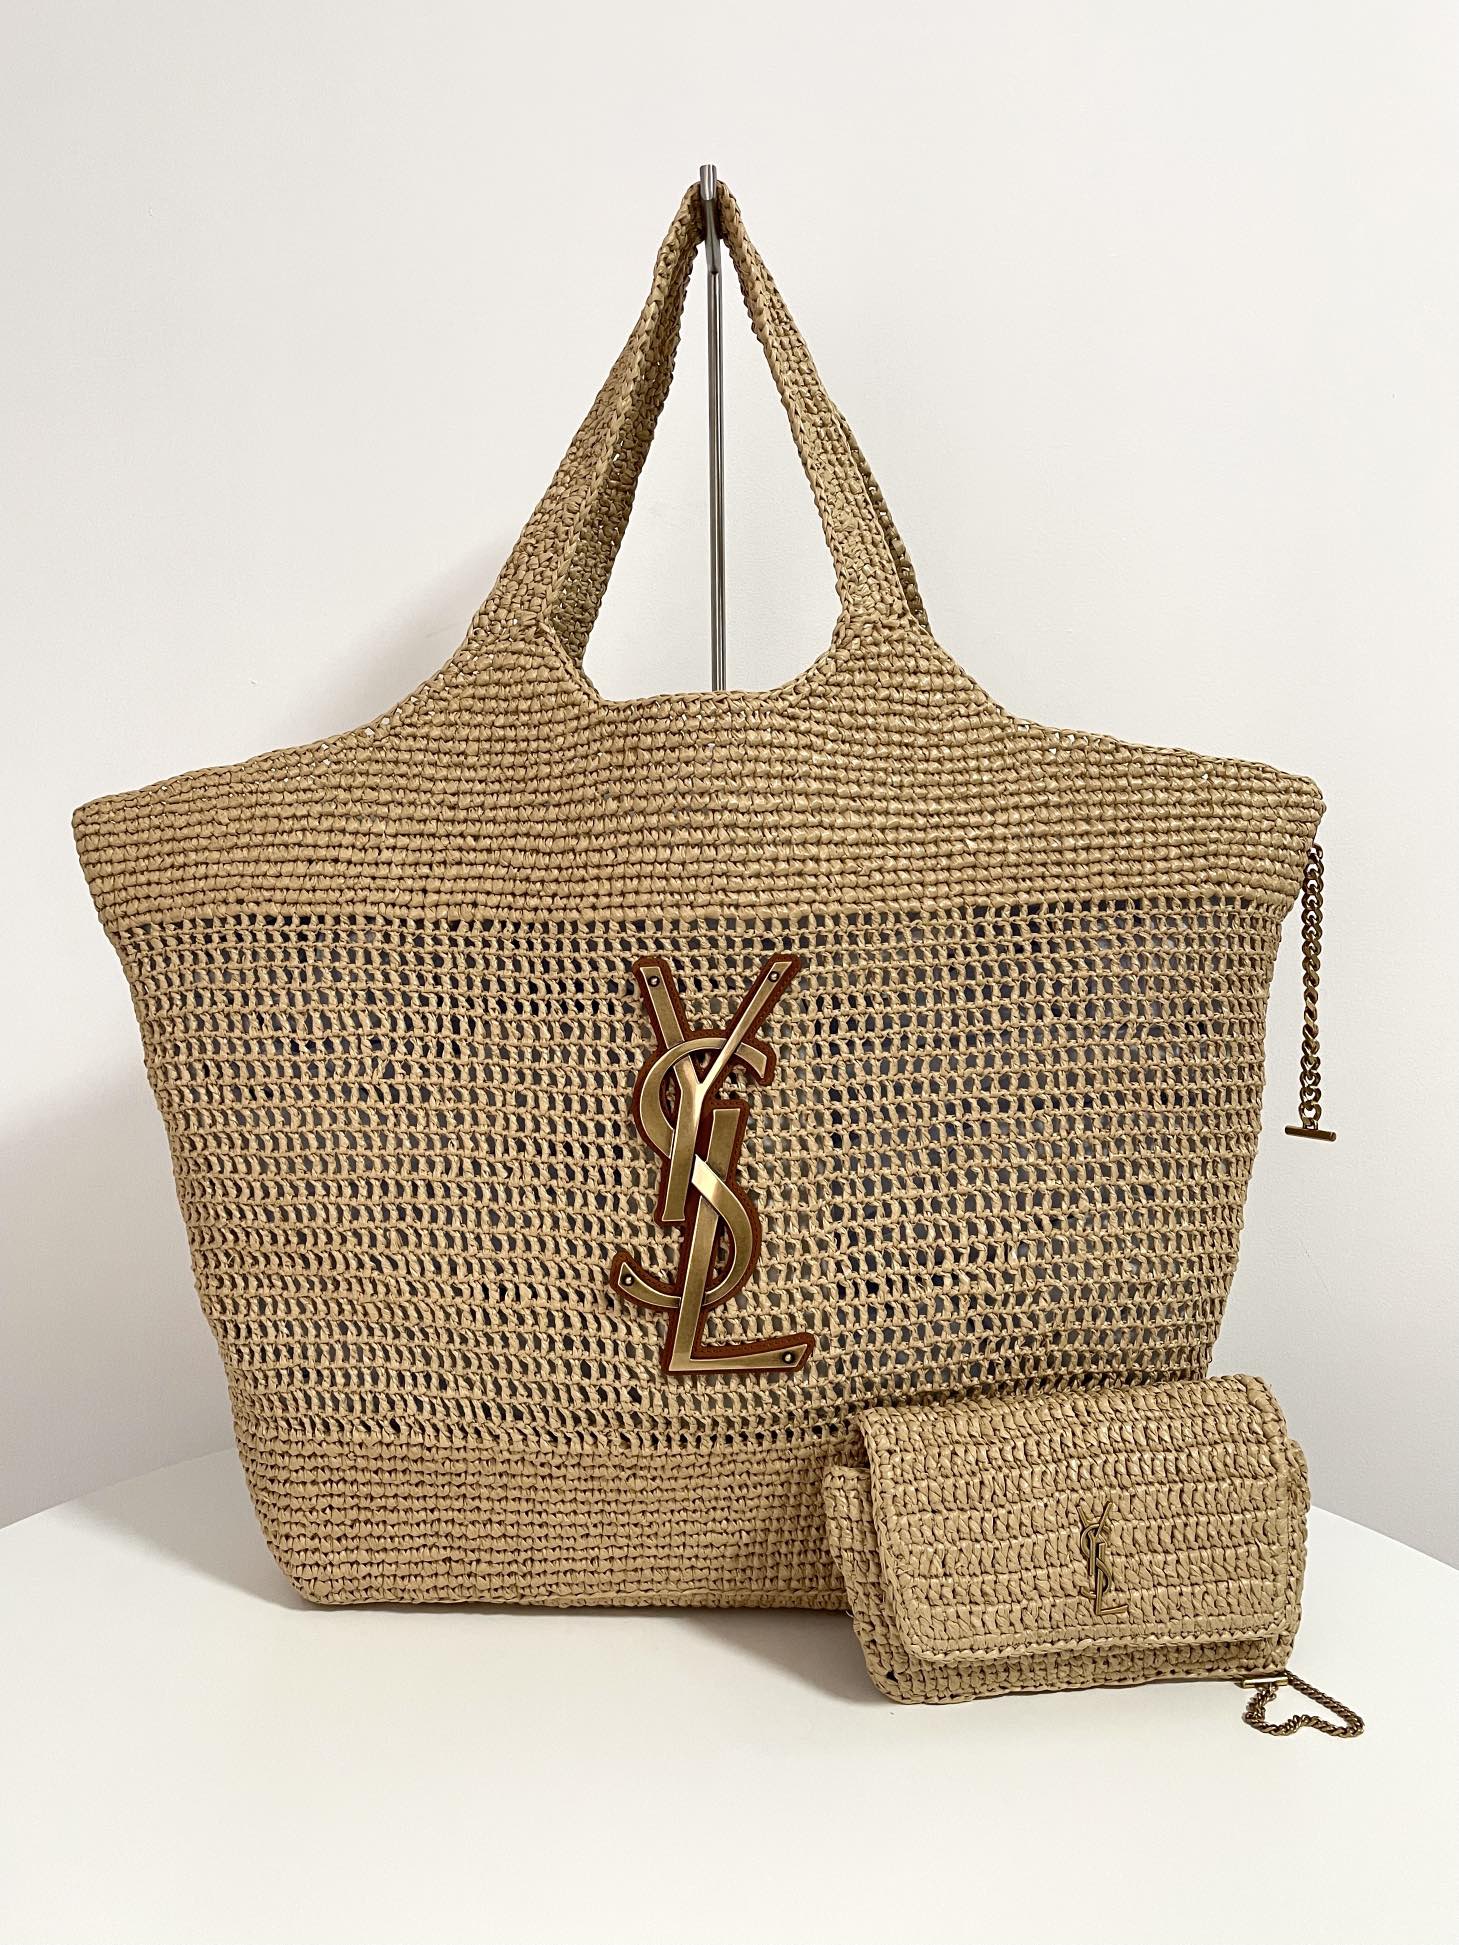 Yves Saint Laurent Taschen Handtaschen Raffia Stroh gewebt Frühling/Sommer Kollektion